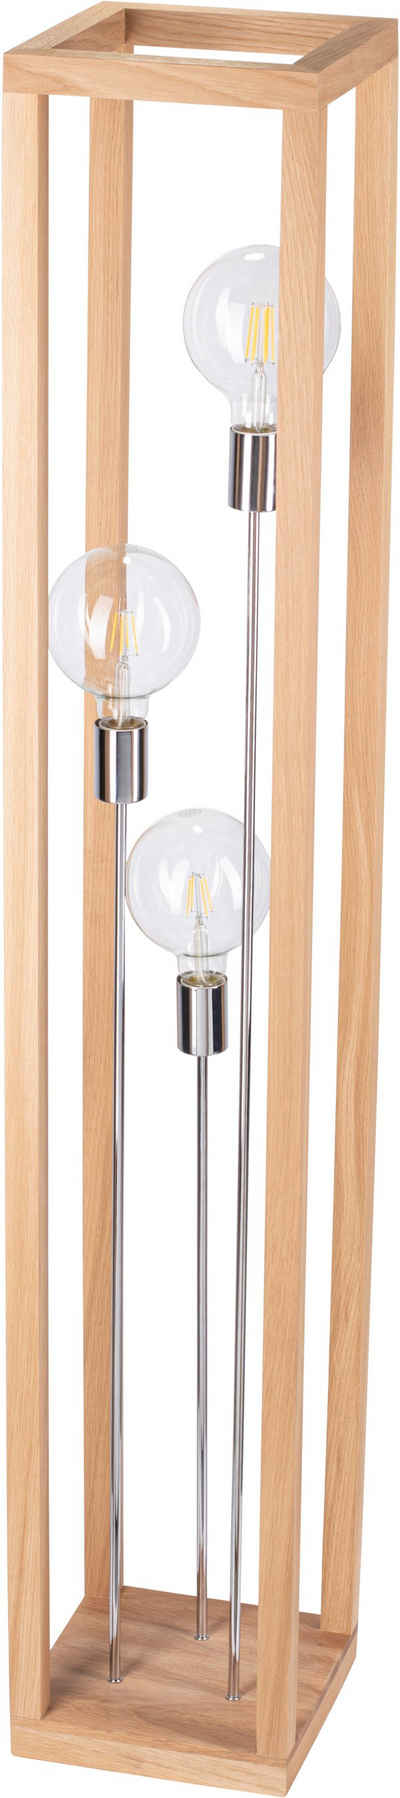 SPOT Light Stehlampe KAGO, ohne Leuchtmittel, Naturprodukt aus Eichenholz, Еко-товар mit FSC®-Zertifikat